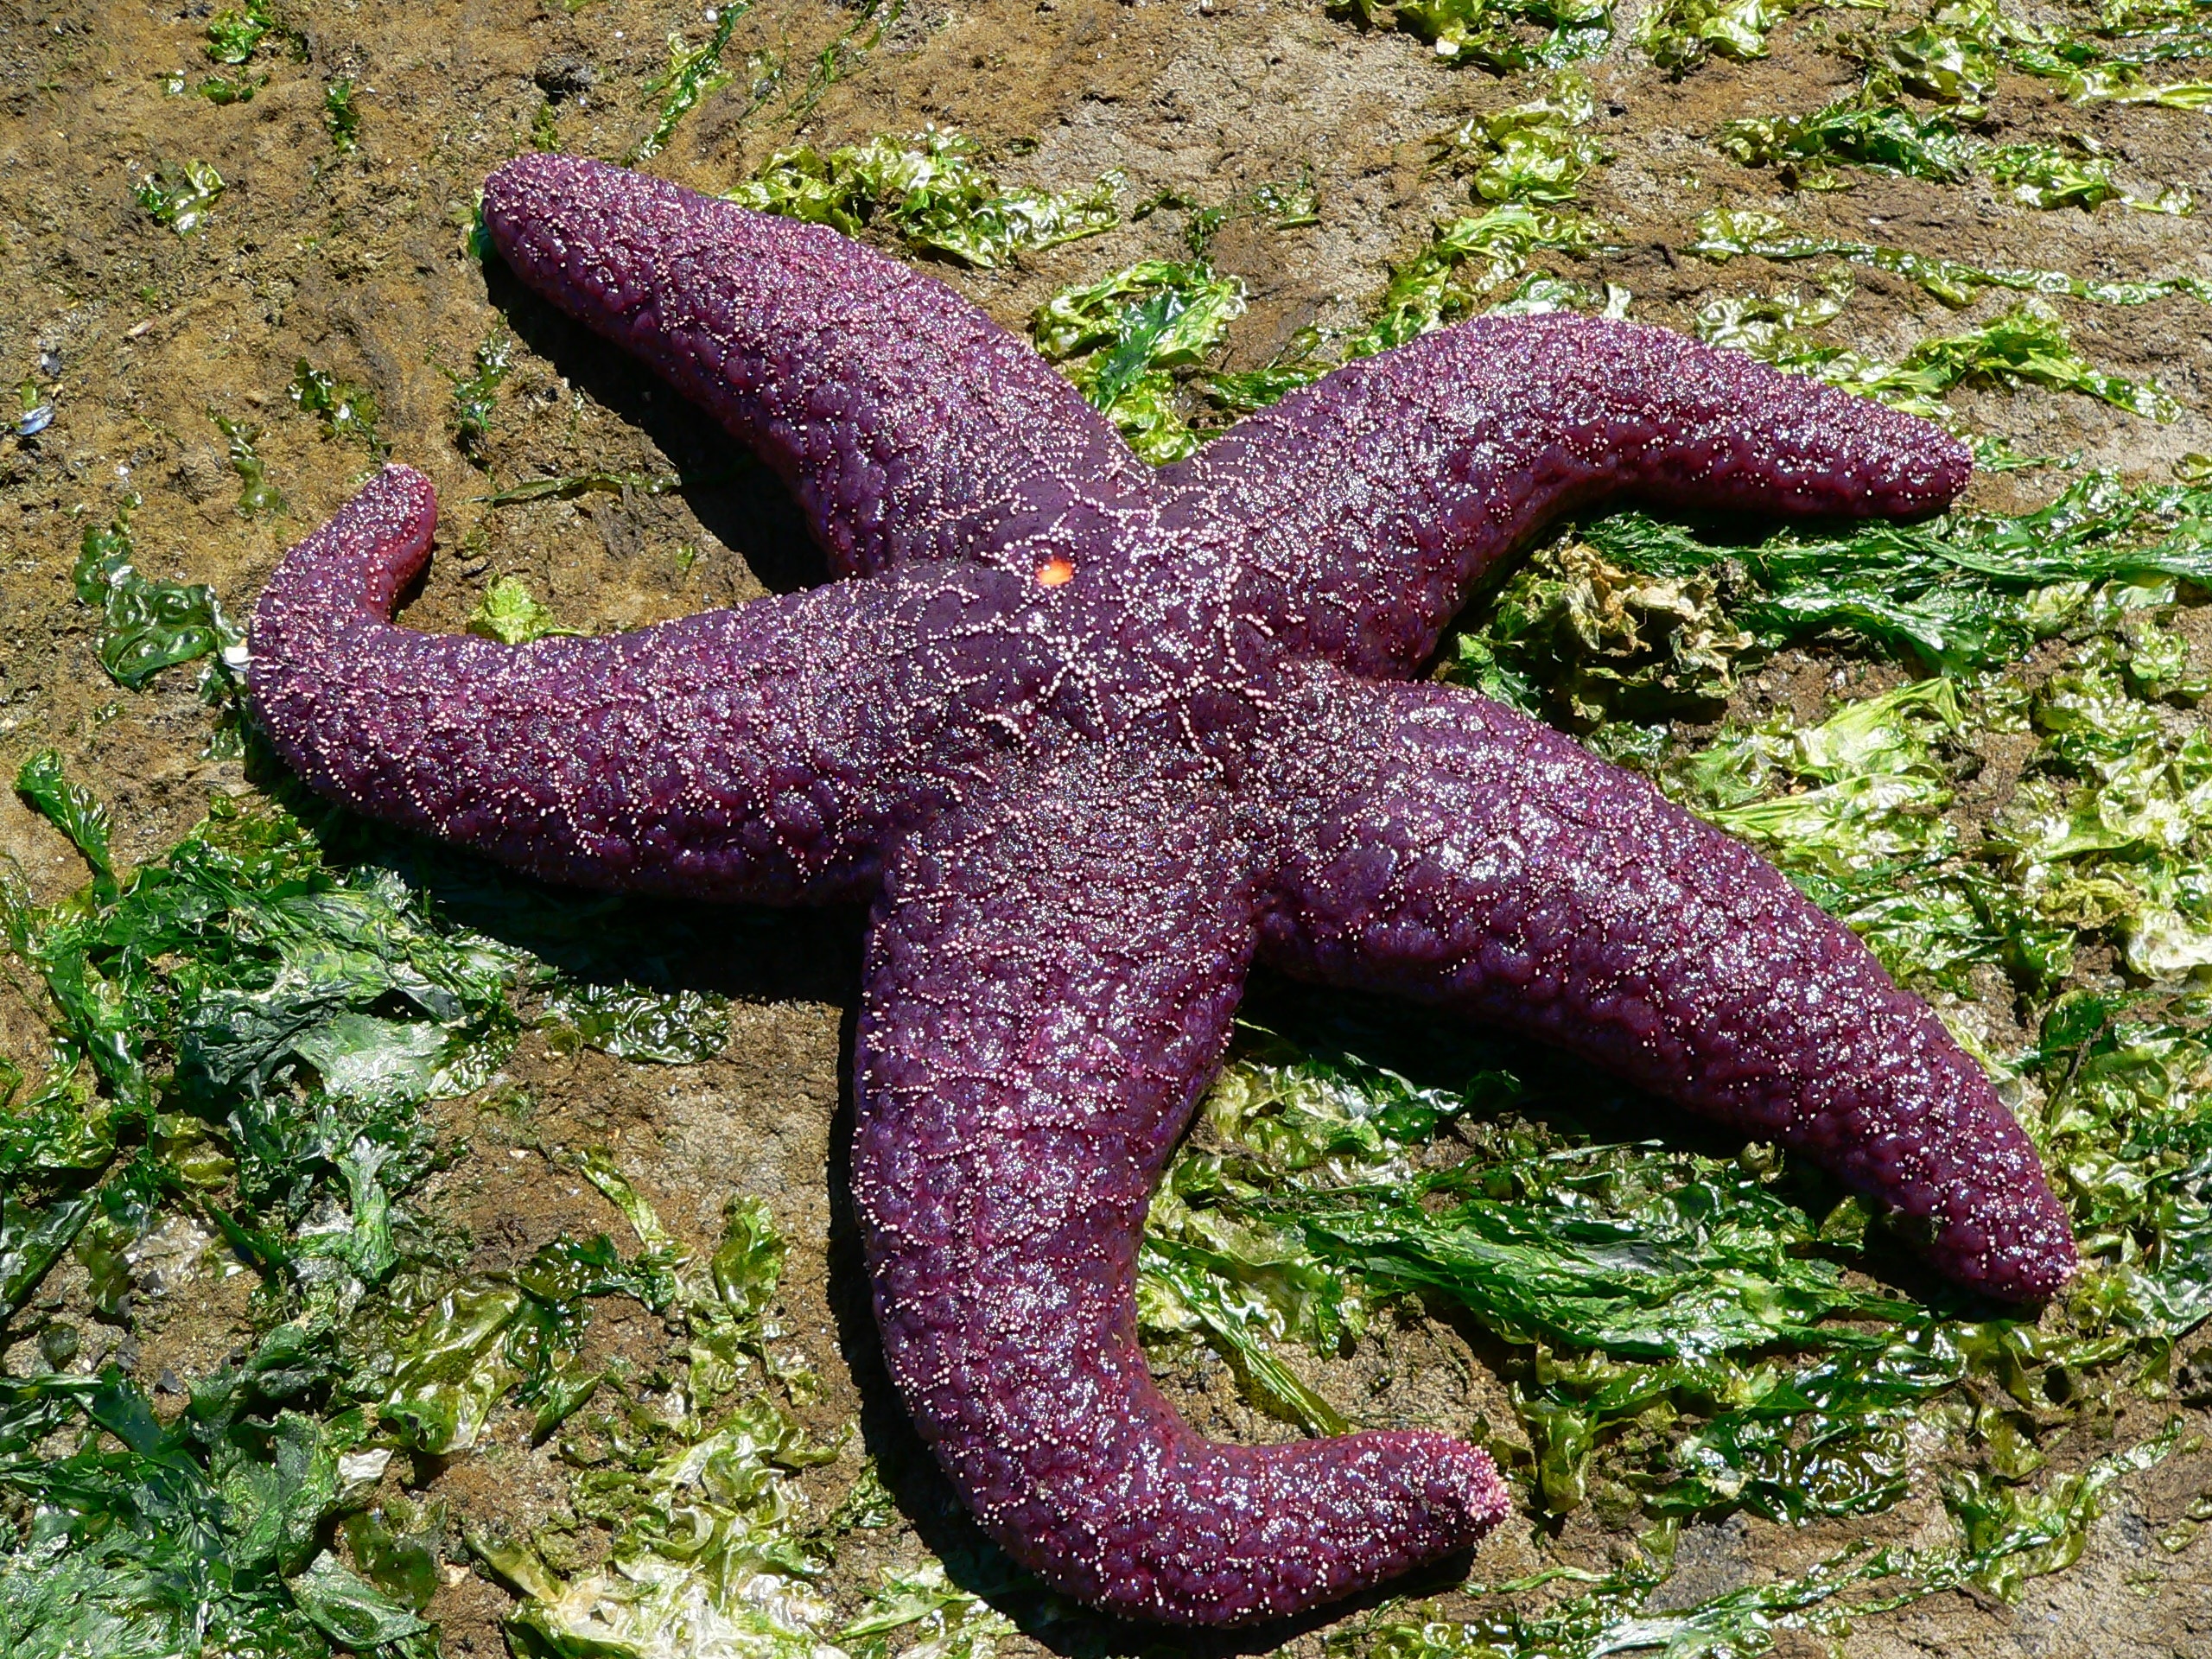 purple star fish